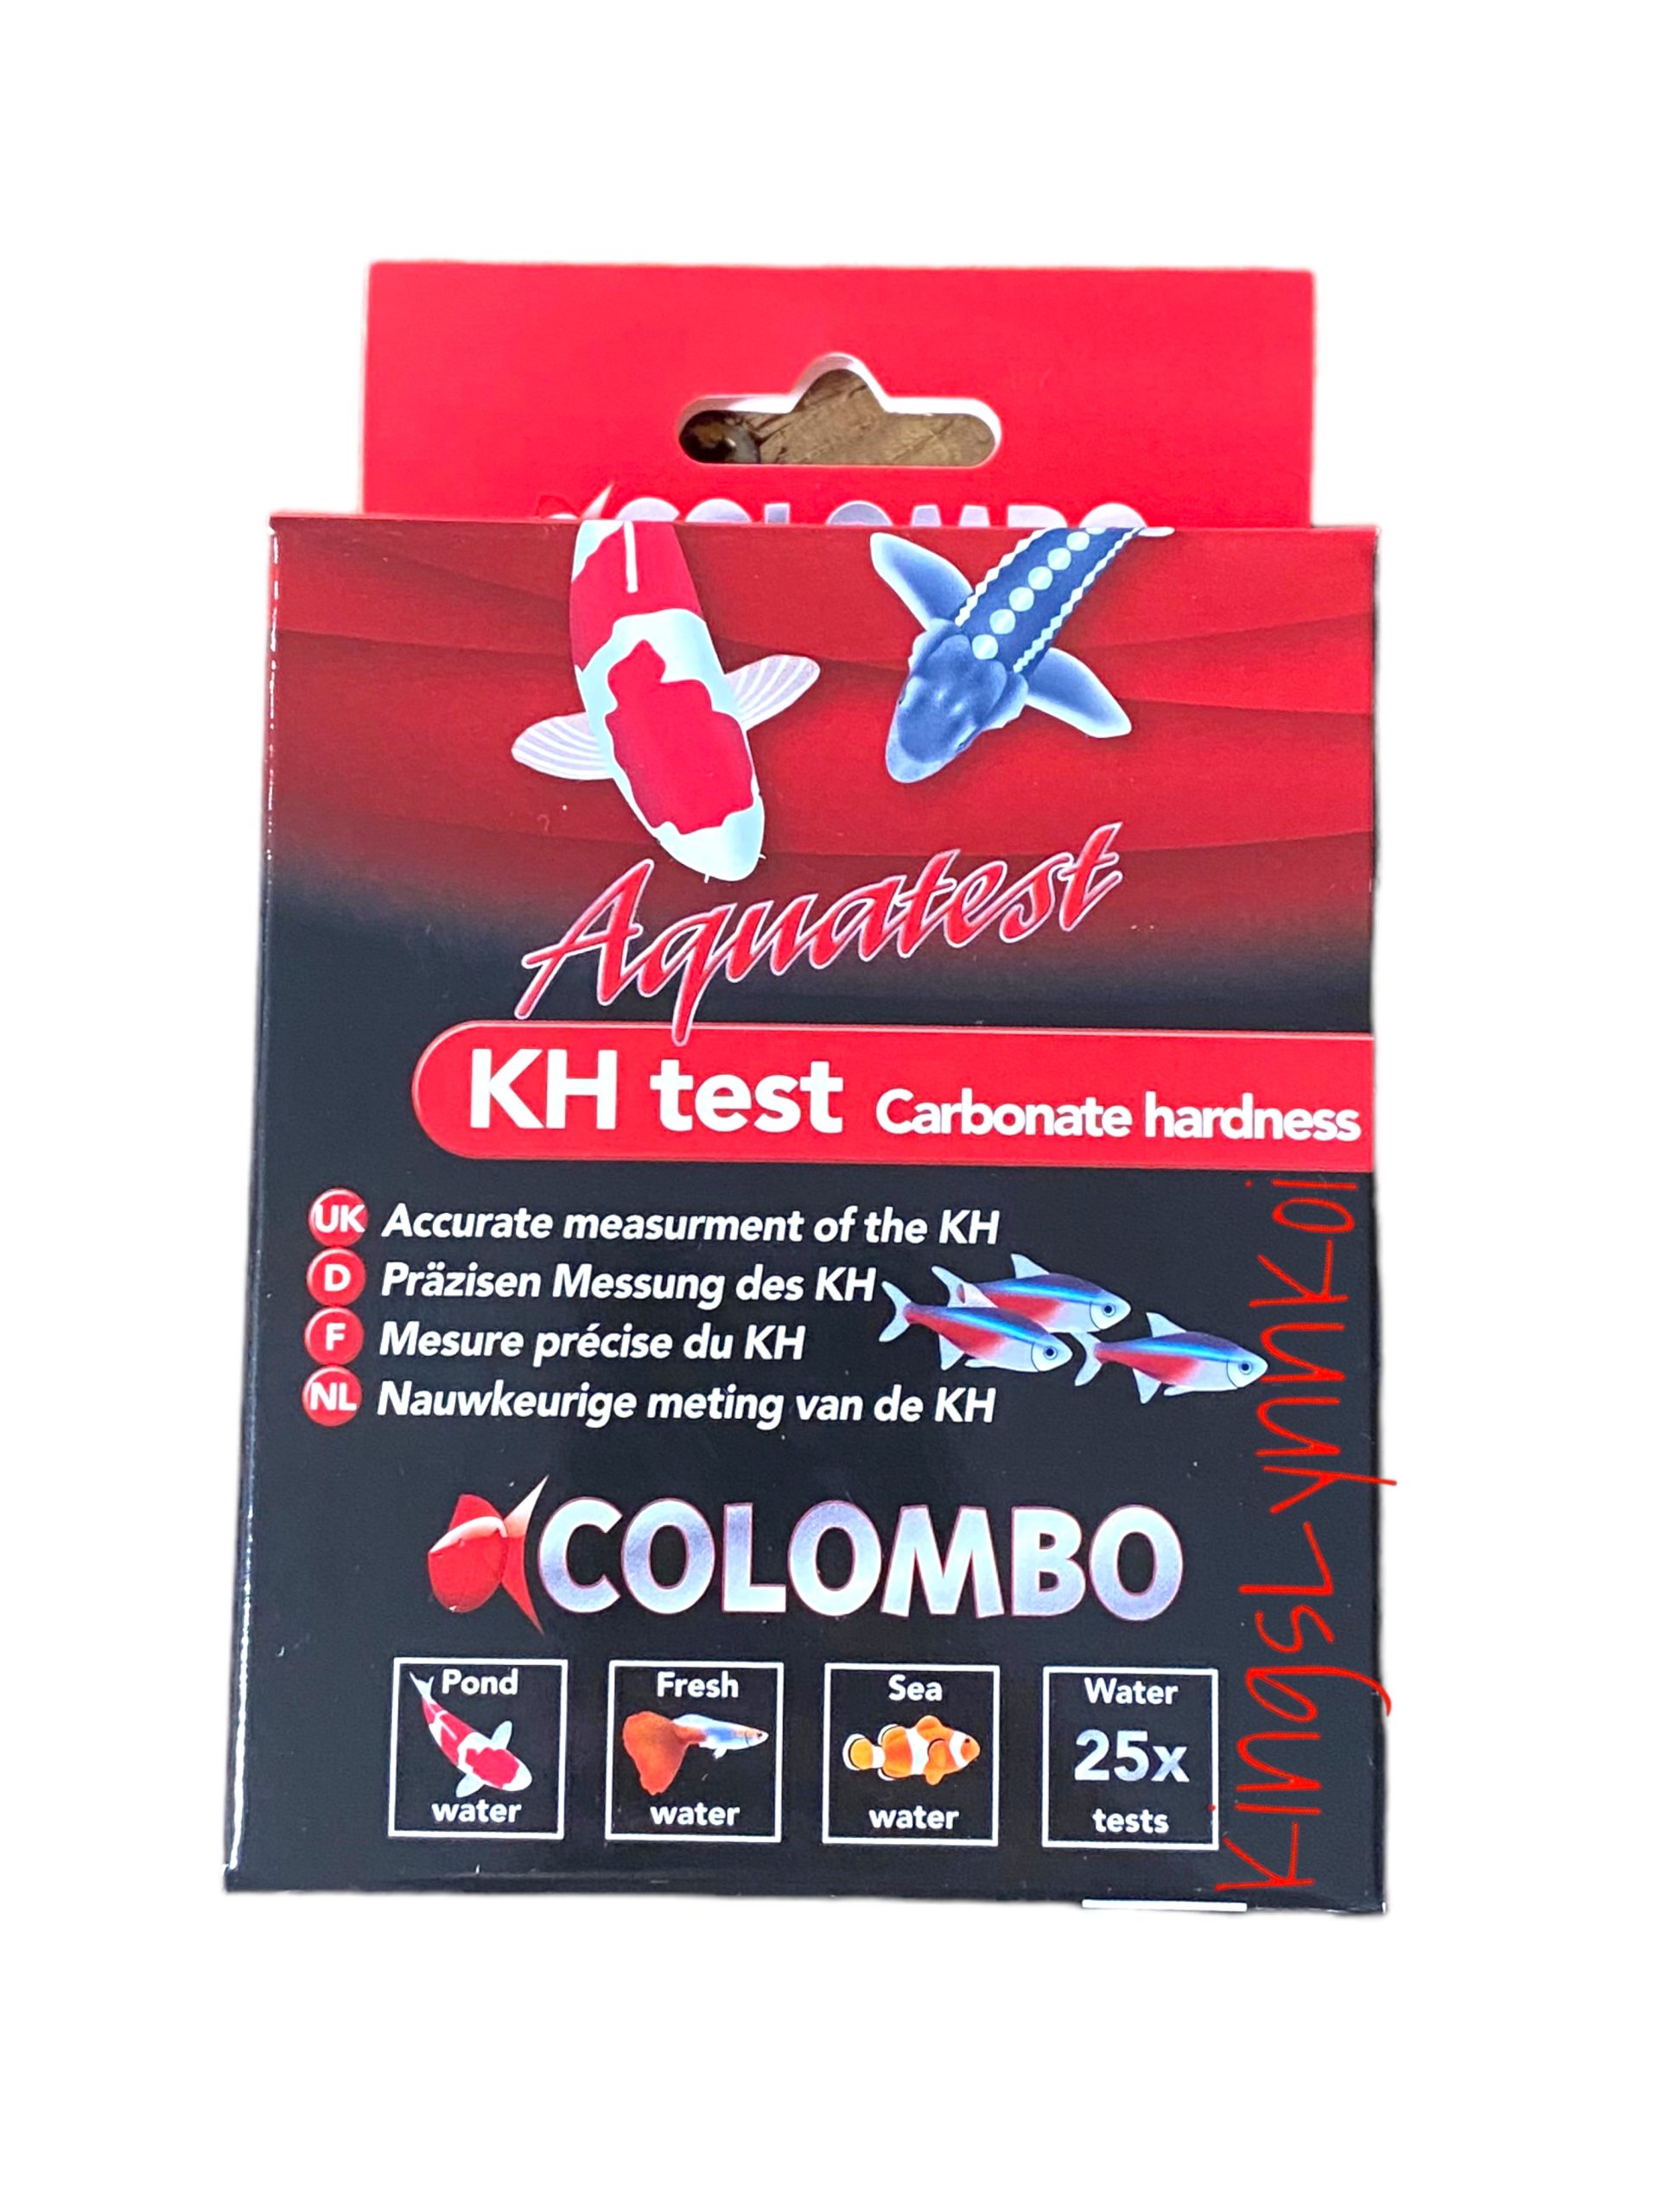 Colombo KH Test Kit